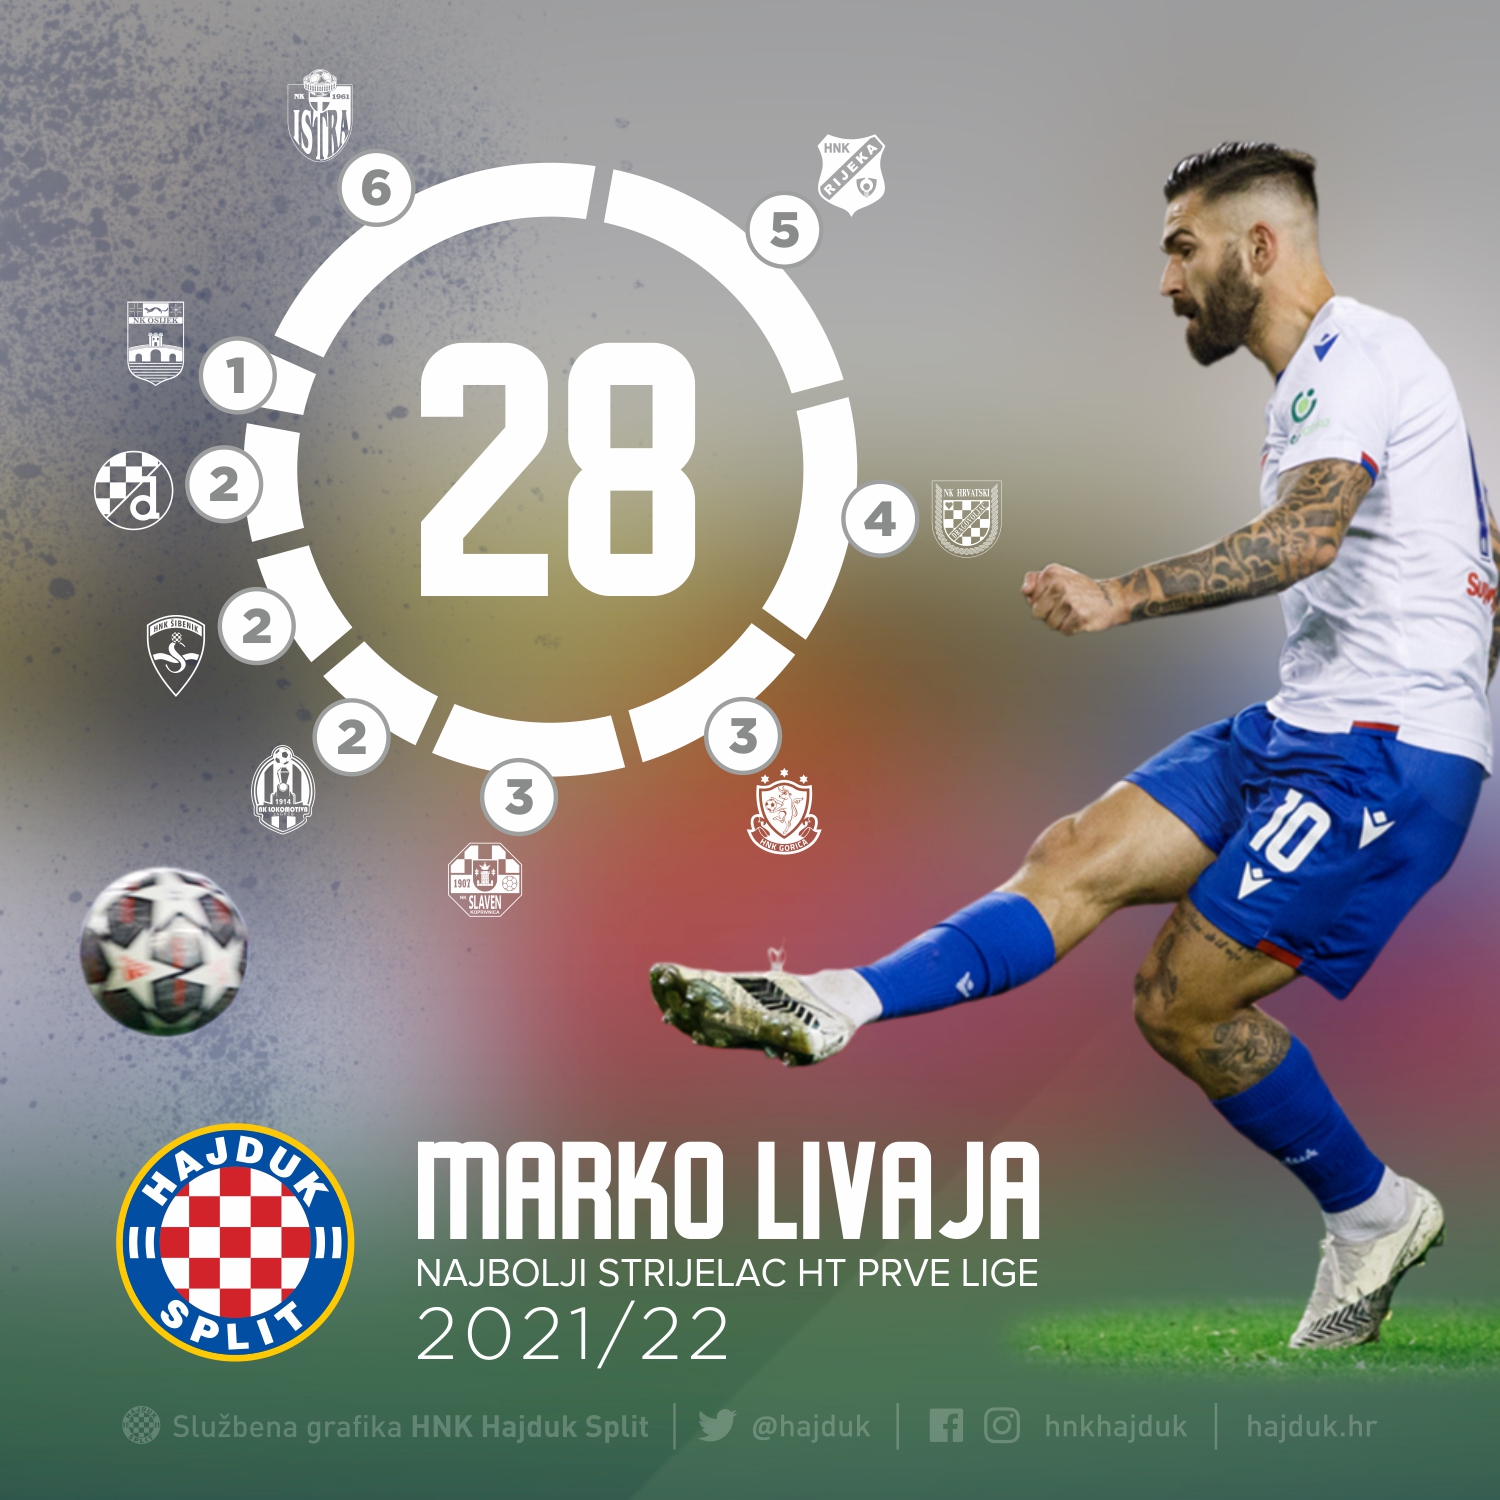 Marko Livaja FIFA 21 Feb 19, 2021 SoFIFA